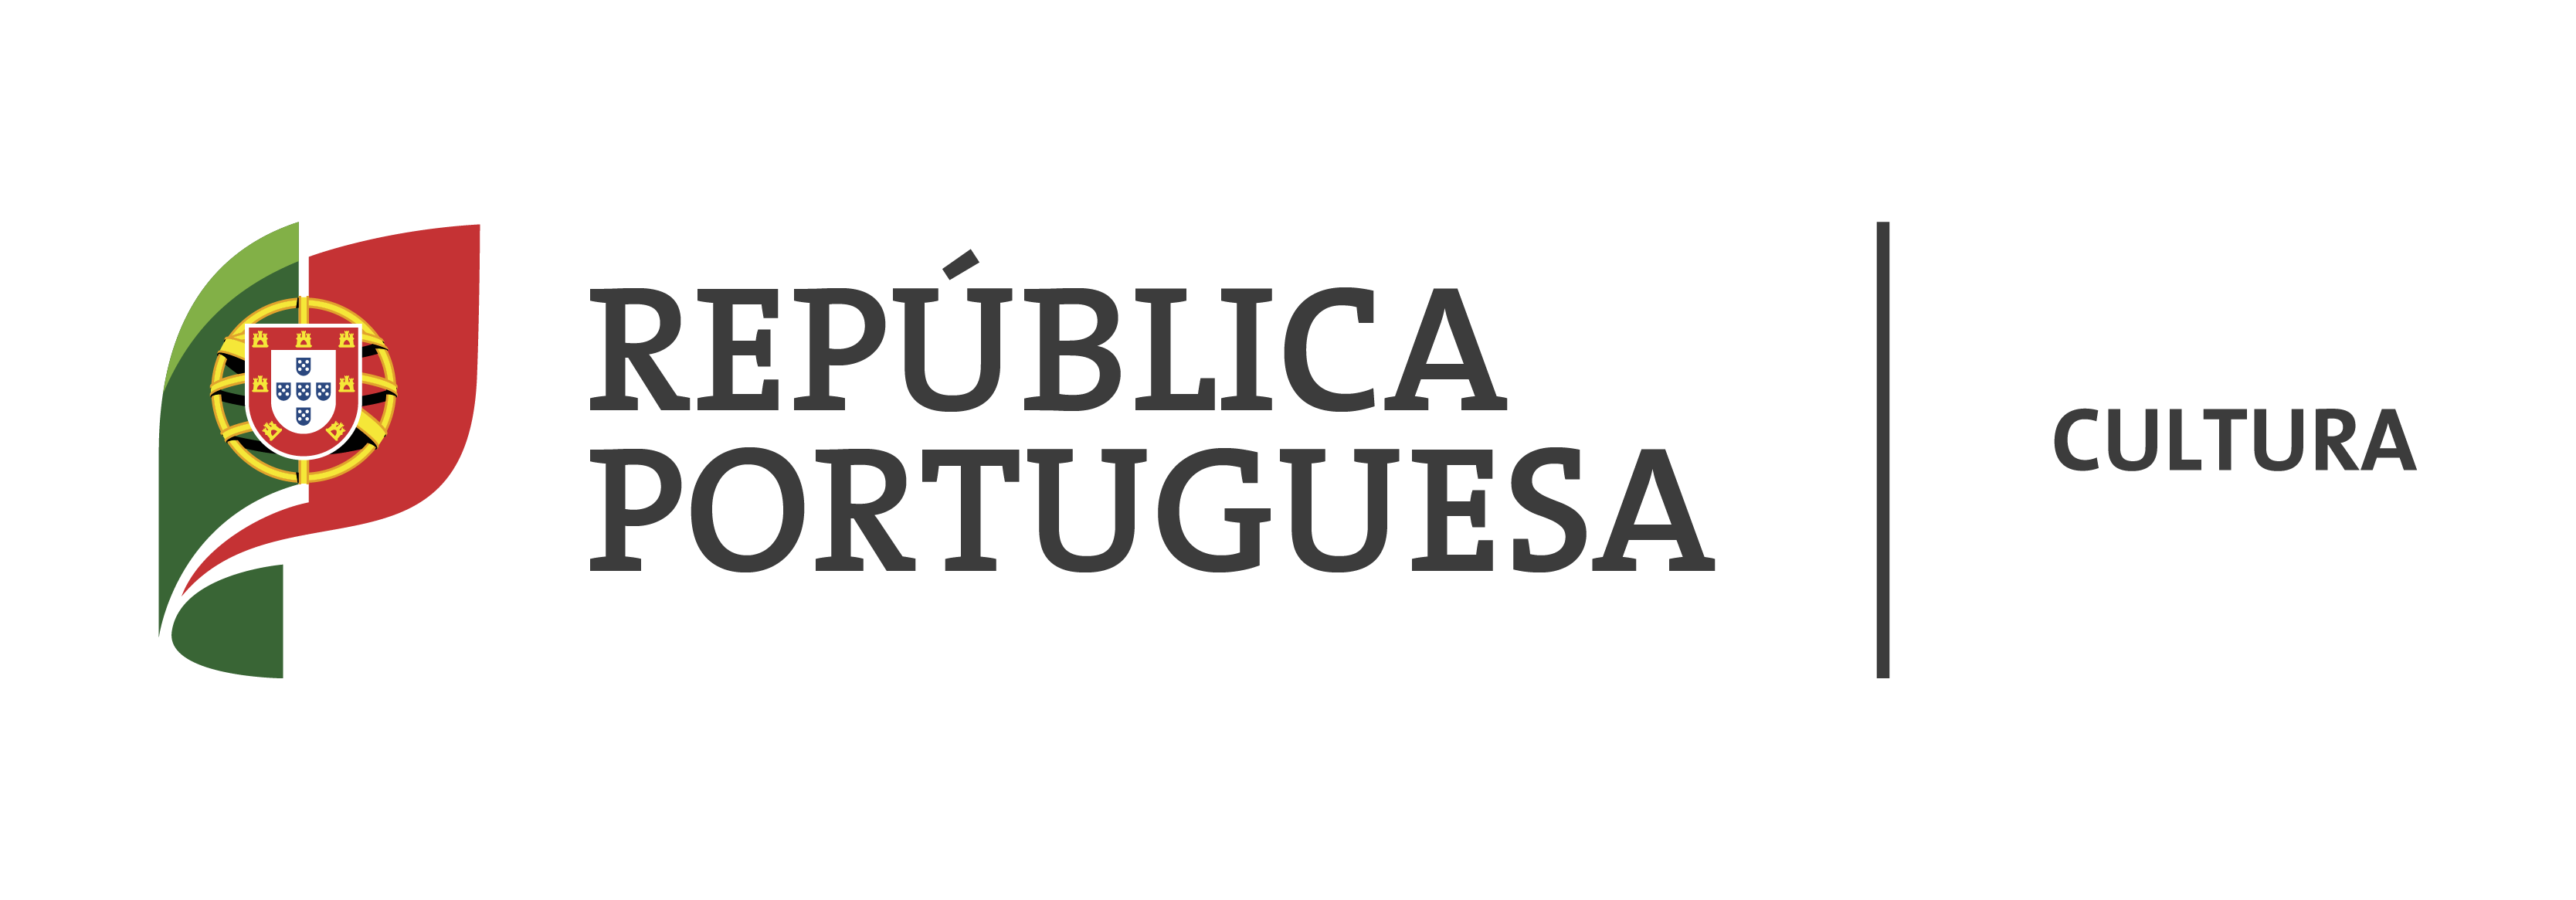 República Portuguesa CULTURA